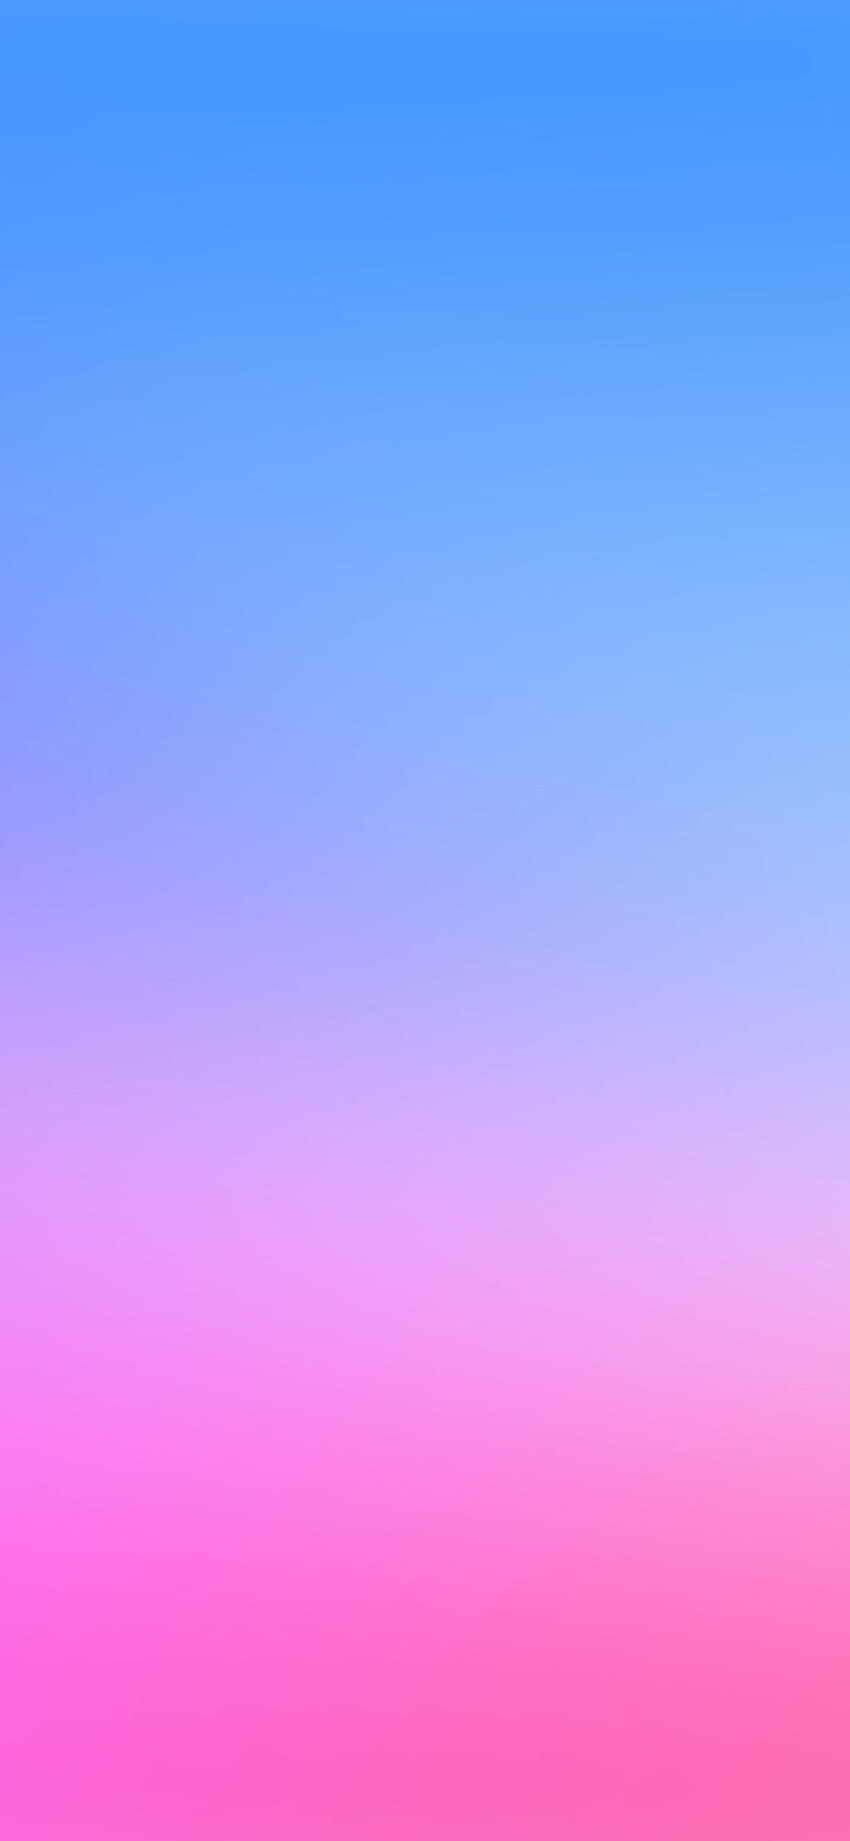 iPhone X . gradasi blur merah muda biru wallpaper ponsel HD